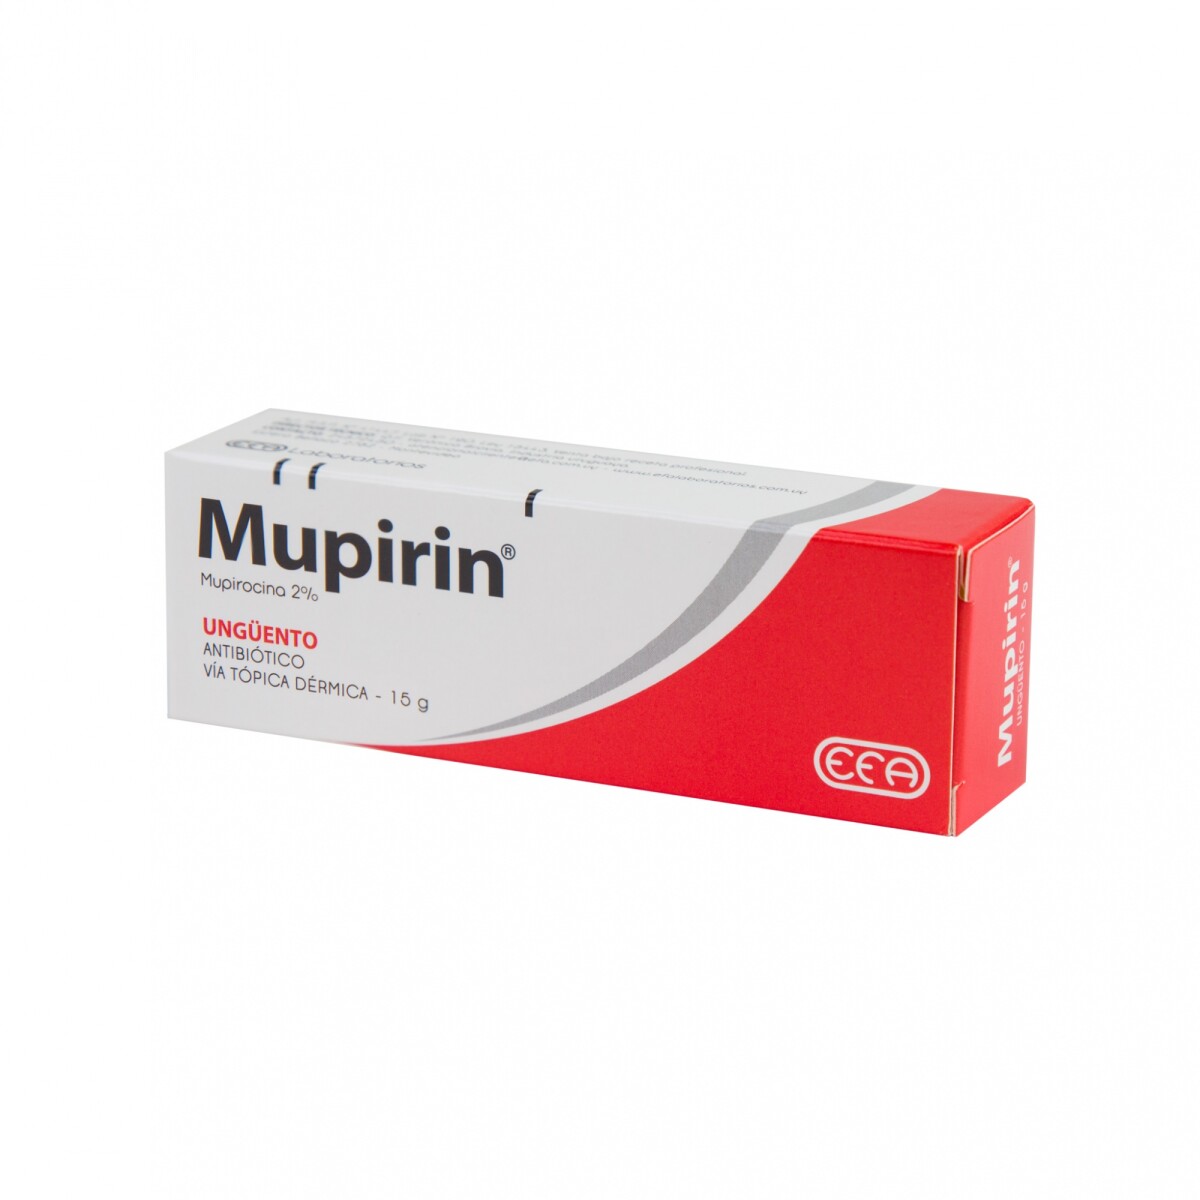 Mupirin Ung Cutaneo 